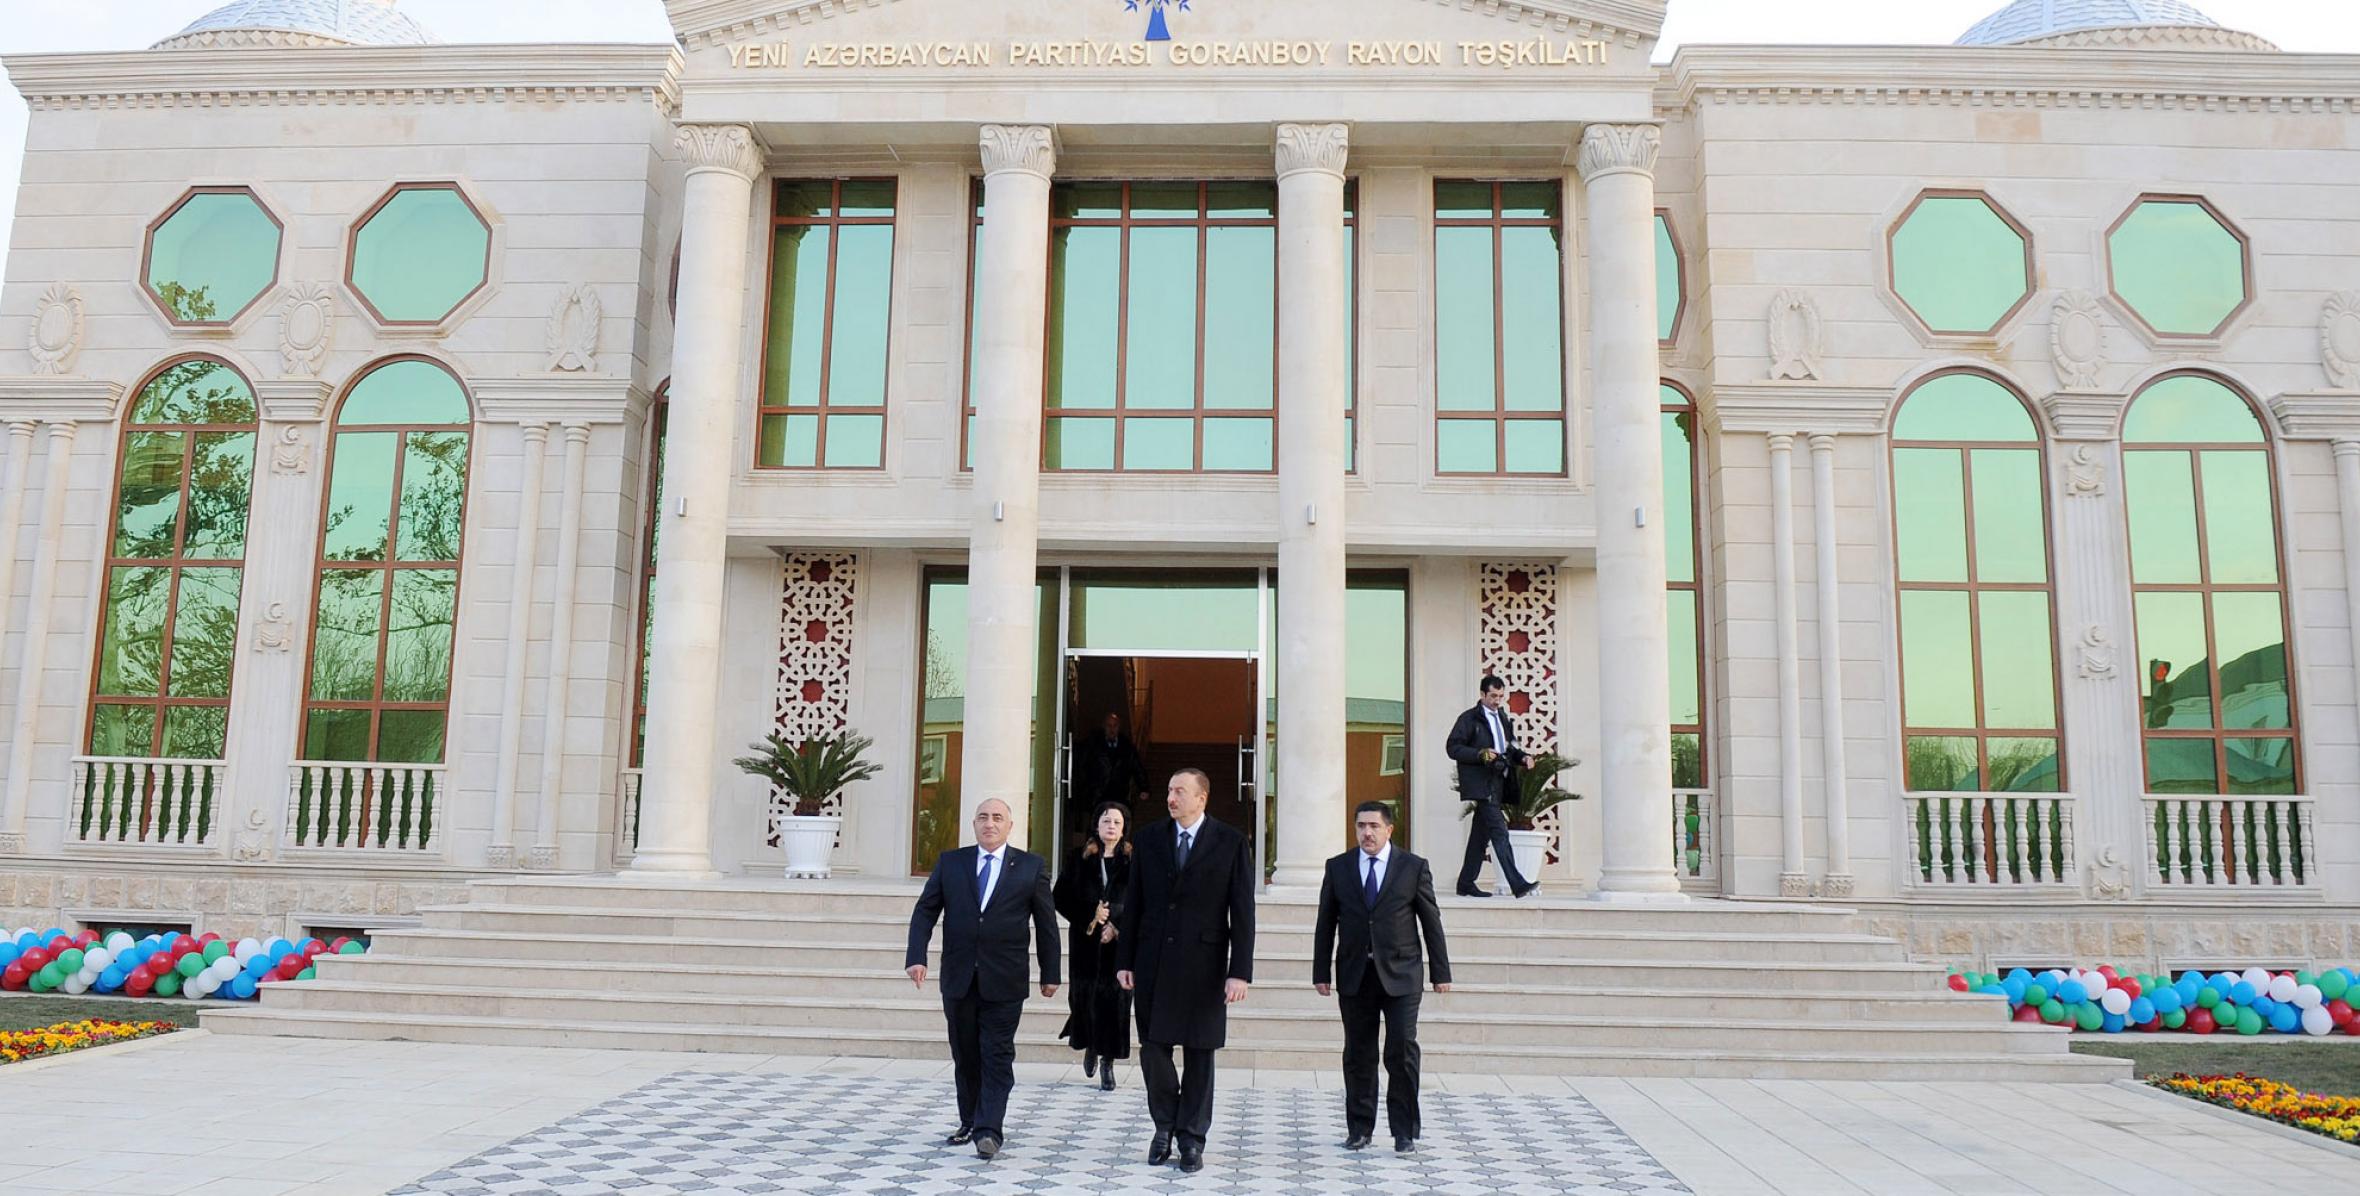 Ильхам Алиев принял участие в открытии нового административного здания Геранбойской районной организации партии «Ени Азербайджан»